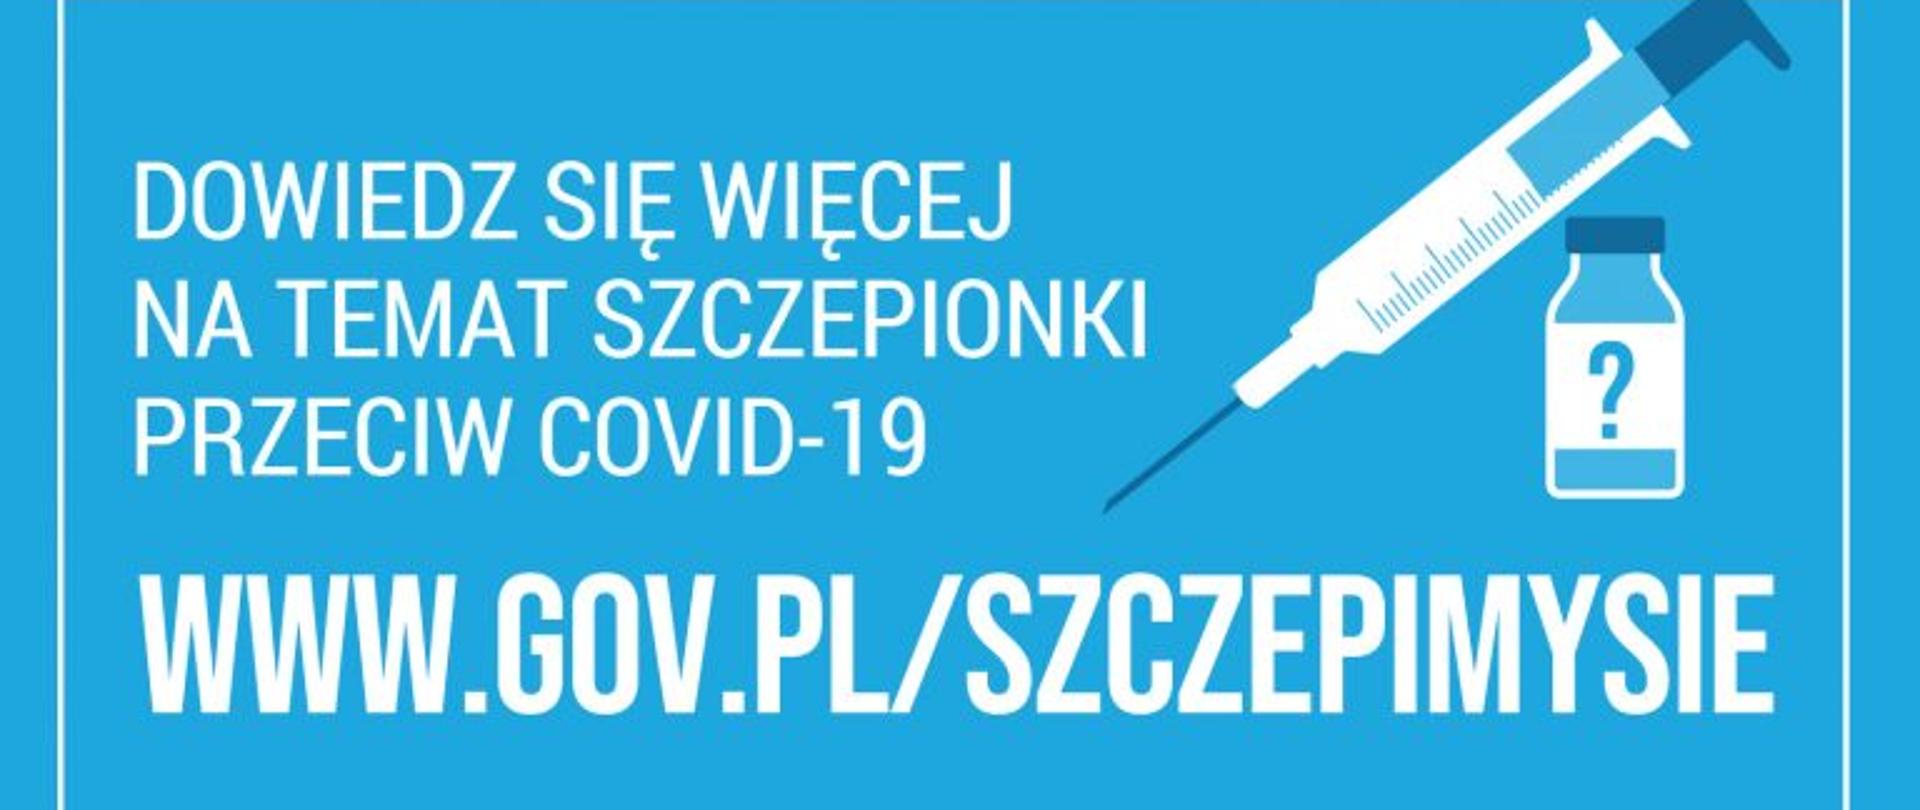 Dowiedz się więcej na temat szczepionki przeciw COVID-19
www.gov.pl/szczepimysie
#SZCZEPIMYSIE